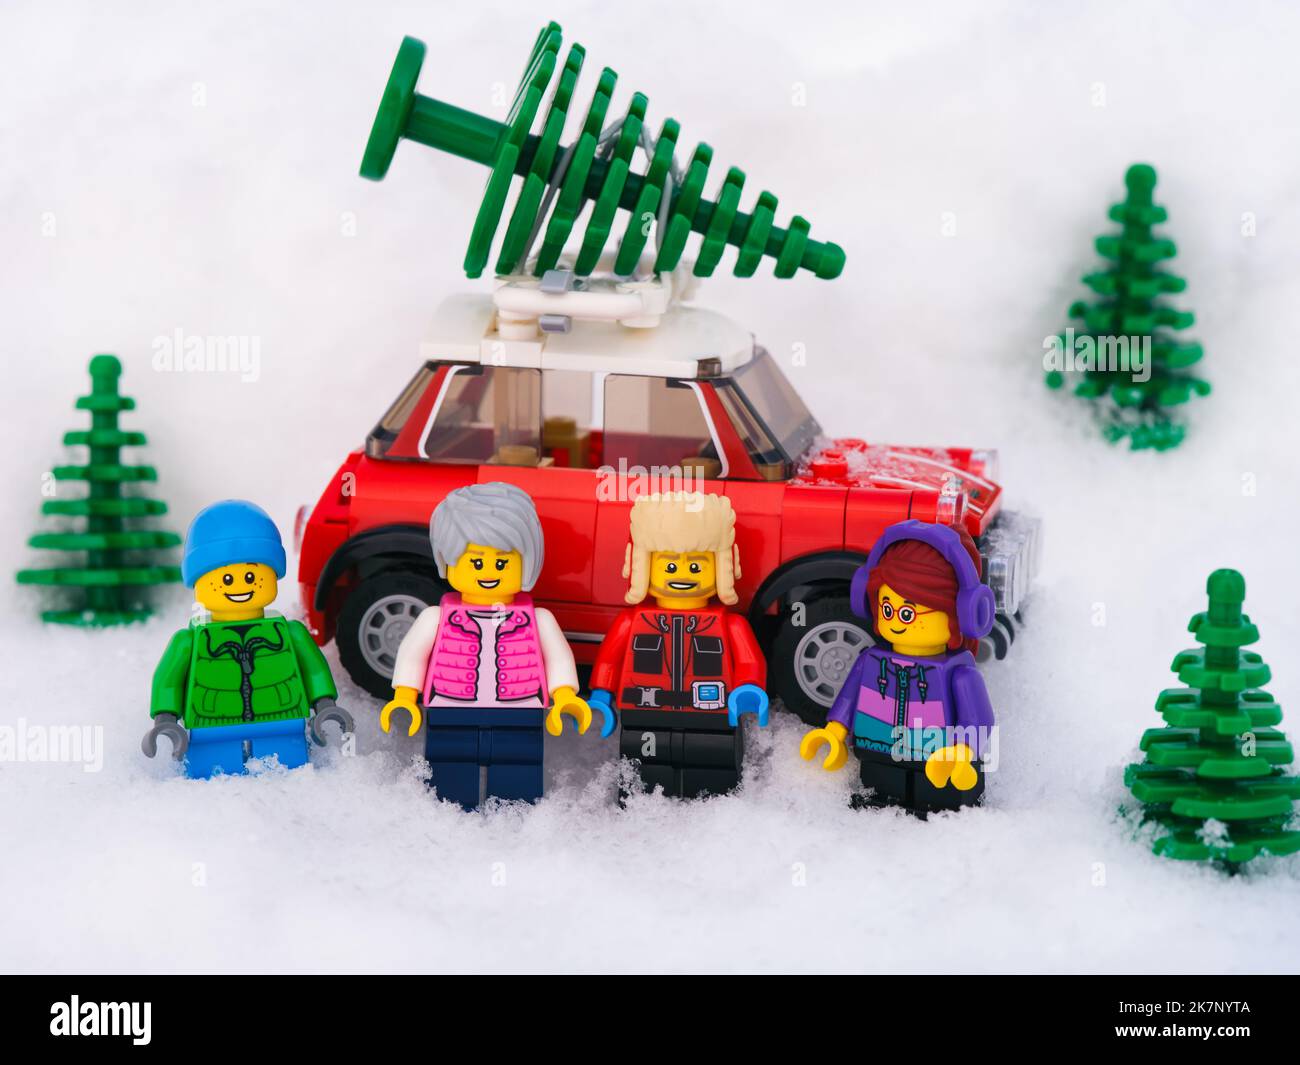 Tambow, Russische Föderation - 19. Januar 2022 Familie Lego steht vor einem roten Auto, auf dem der Weihnachtsbaum im Schnee steht. Stockfoto